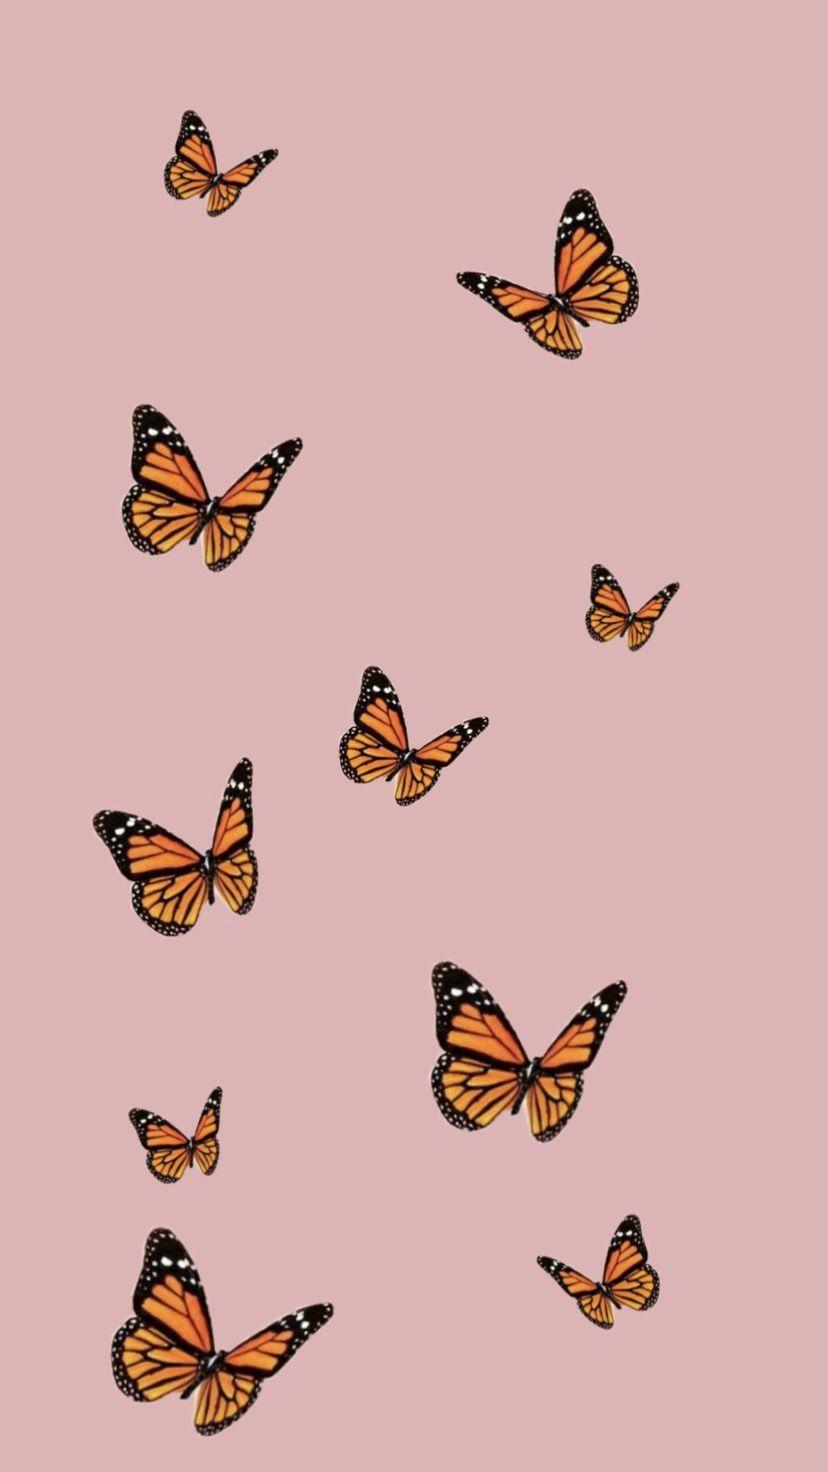 Hình nền bướm thẩm mỹ Hãy thất bại hình nền đẹp mắt với những bướm thẩm mỹ đi kèm. Dáng vẻ nữ tính và mềm mại của bướm khơi gợi những cảm xúc tuyệt đẹp và thanh thản, giúp cho bạn cảm thấy yên bình trong tâm hồn.